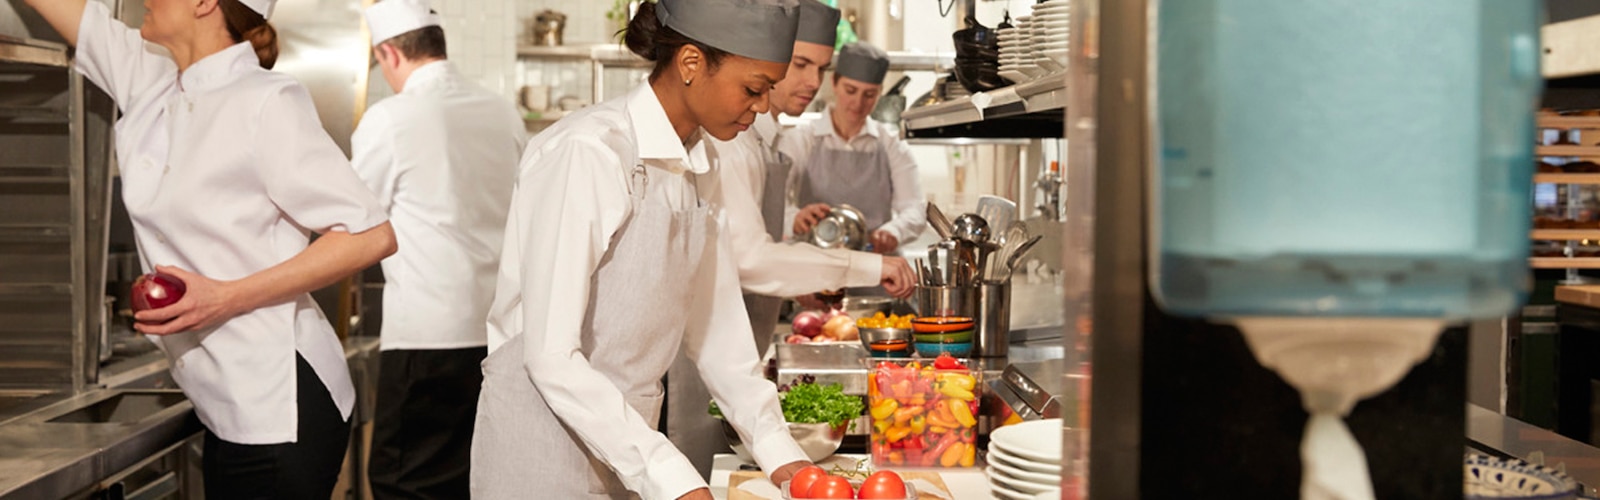 Γυναίκες και άντρες σε κουζίνα εστιατορίου ετοιμάζουν γεύματα